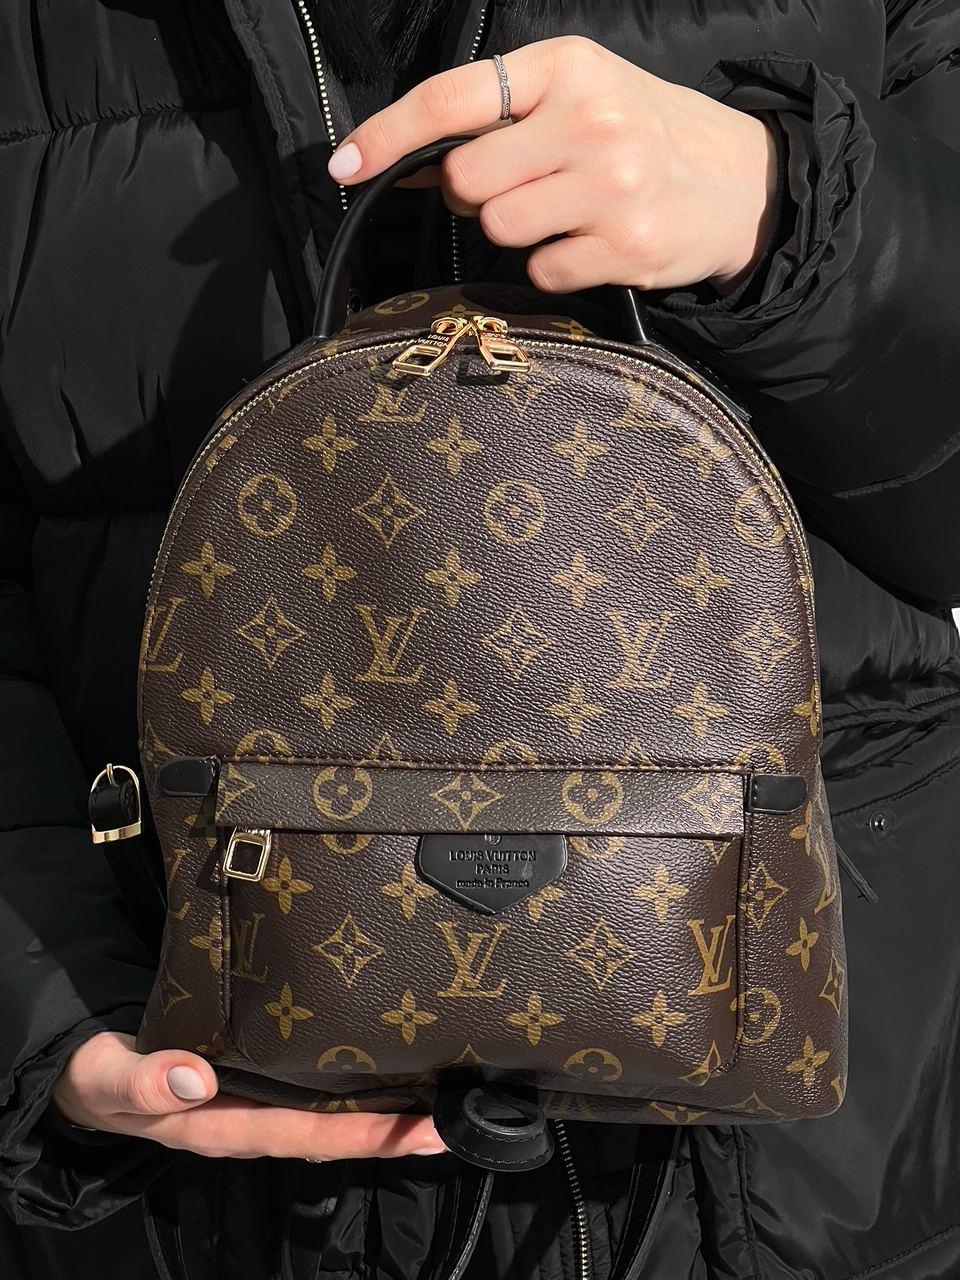 Рюкзаки маленькие  Louis Vuitton Palm Springs mini рюкзак монограм 7777  купить в интернетмагазине